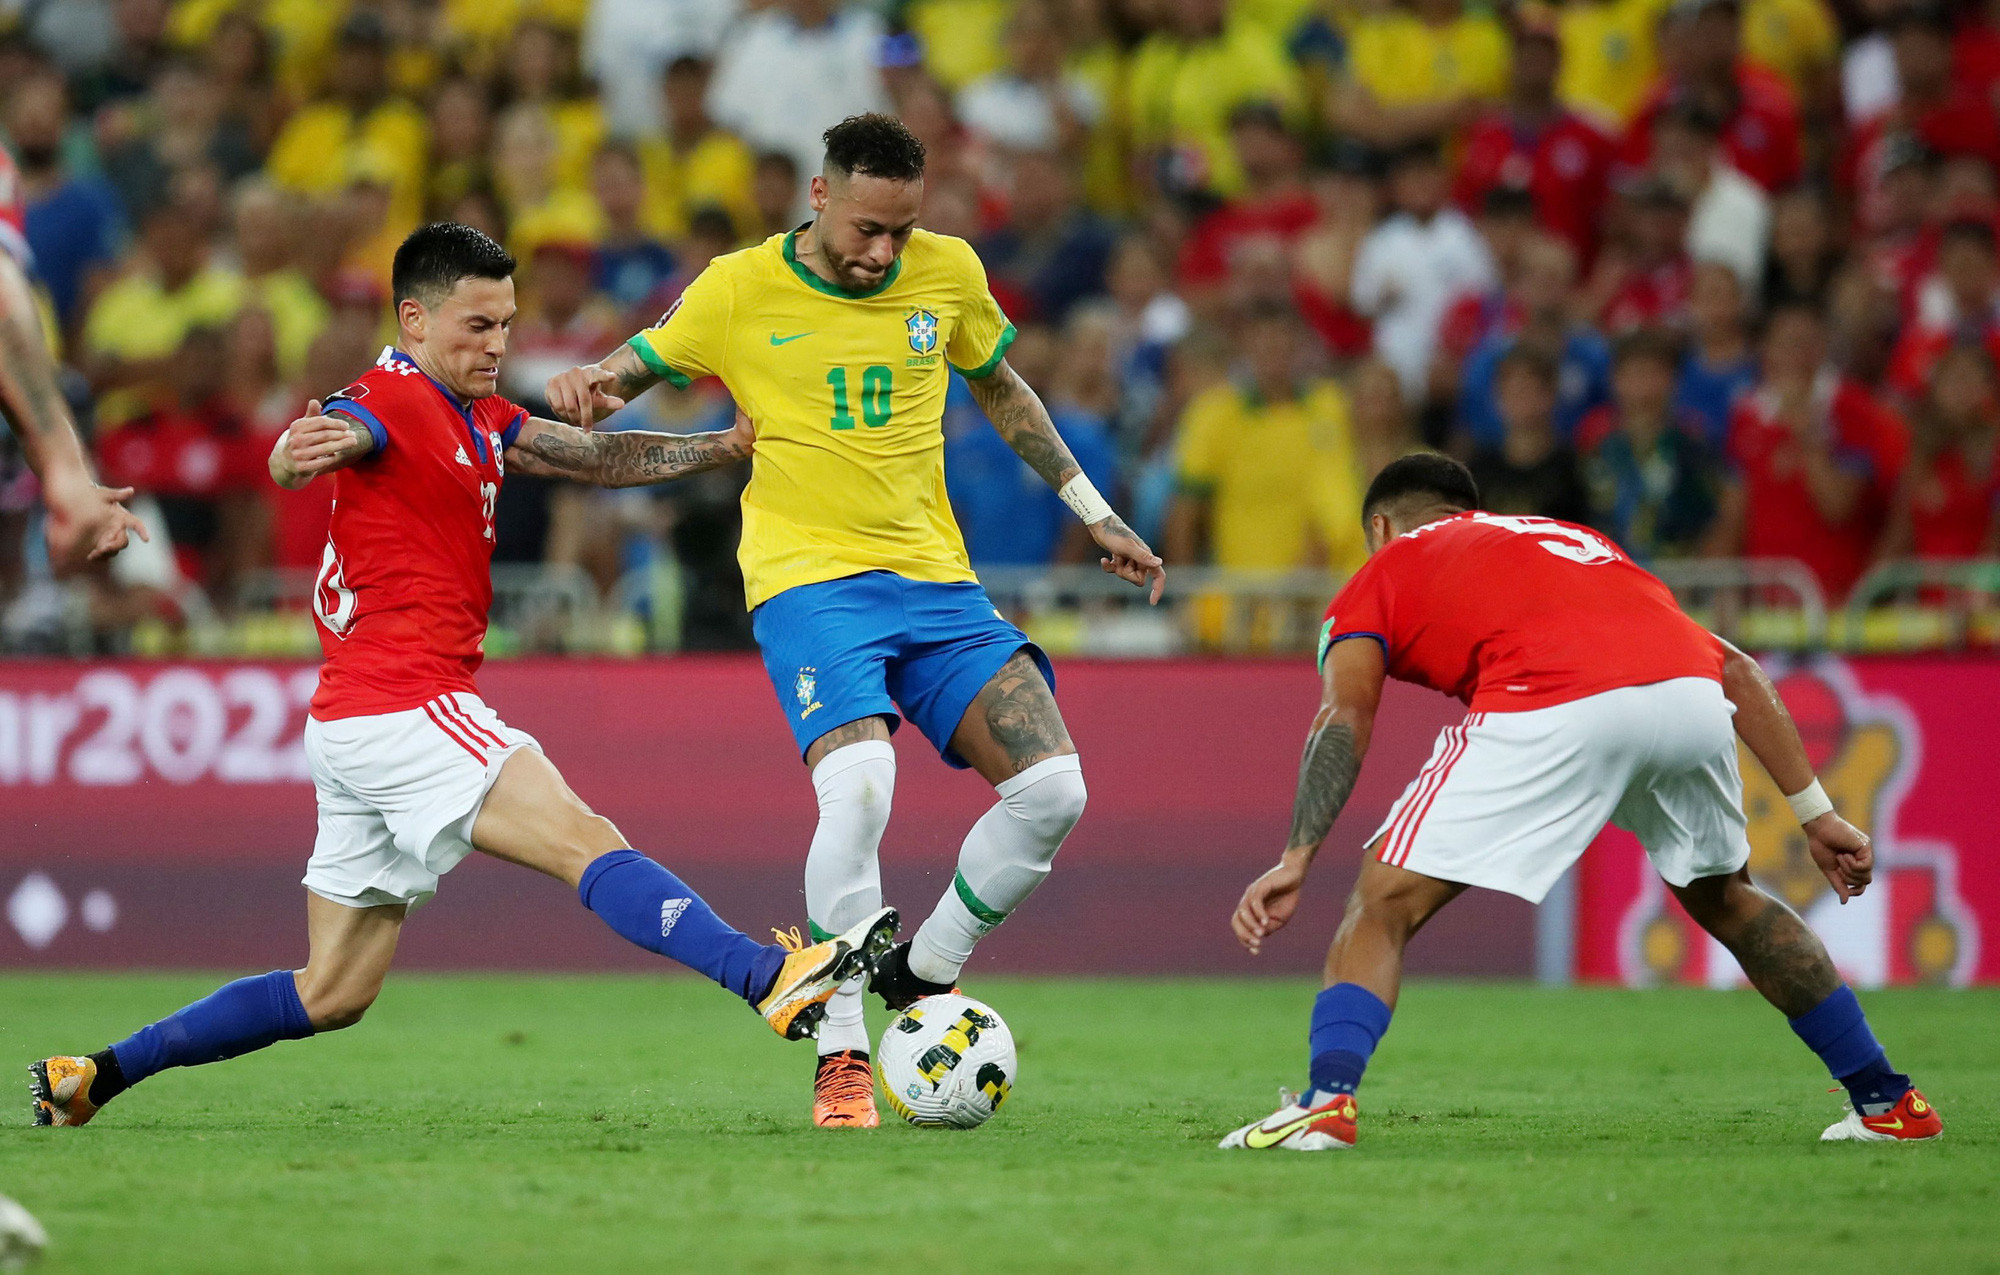 Brazil vs Thụy Sĩ – Dự đoán, Tỷ lệ cược, & Mẹo cá cược tốt nhất